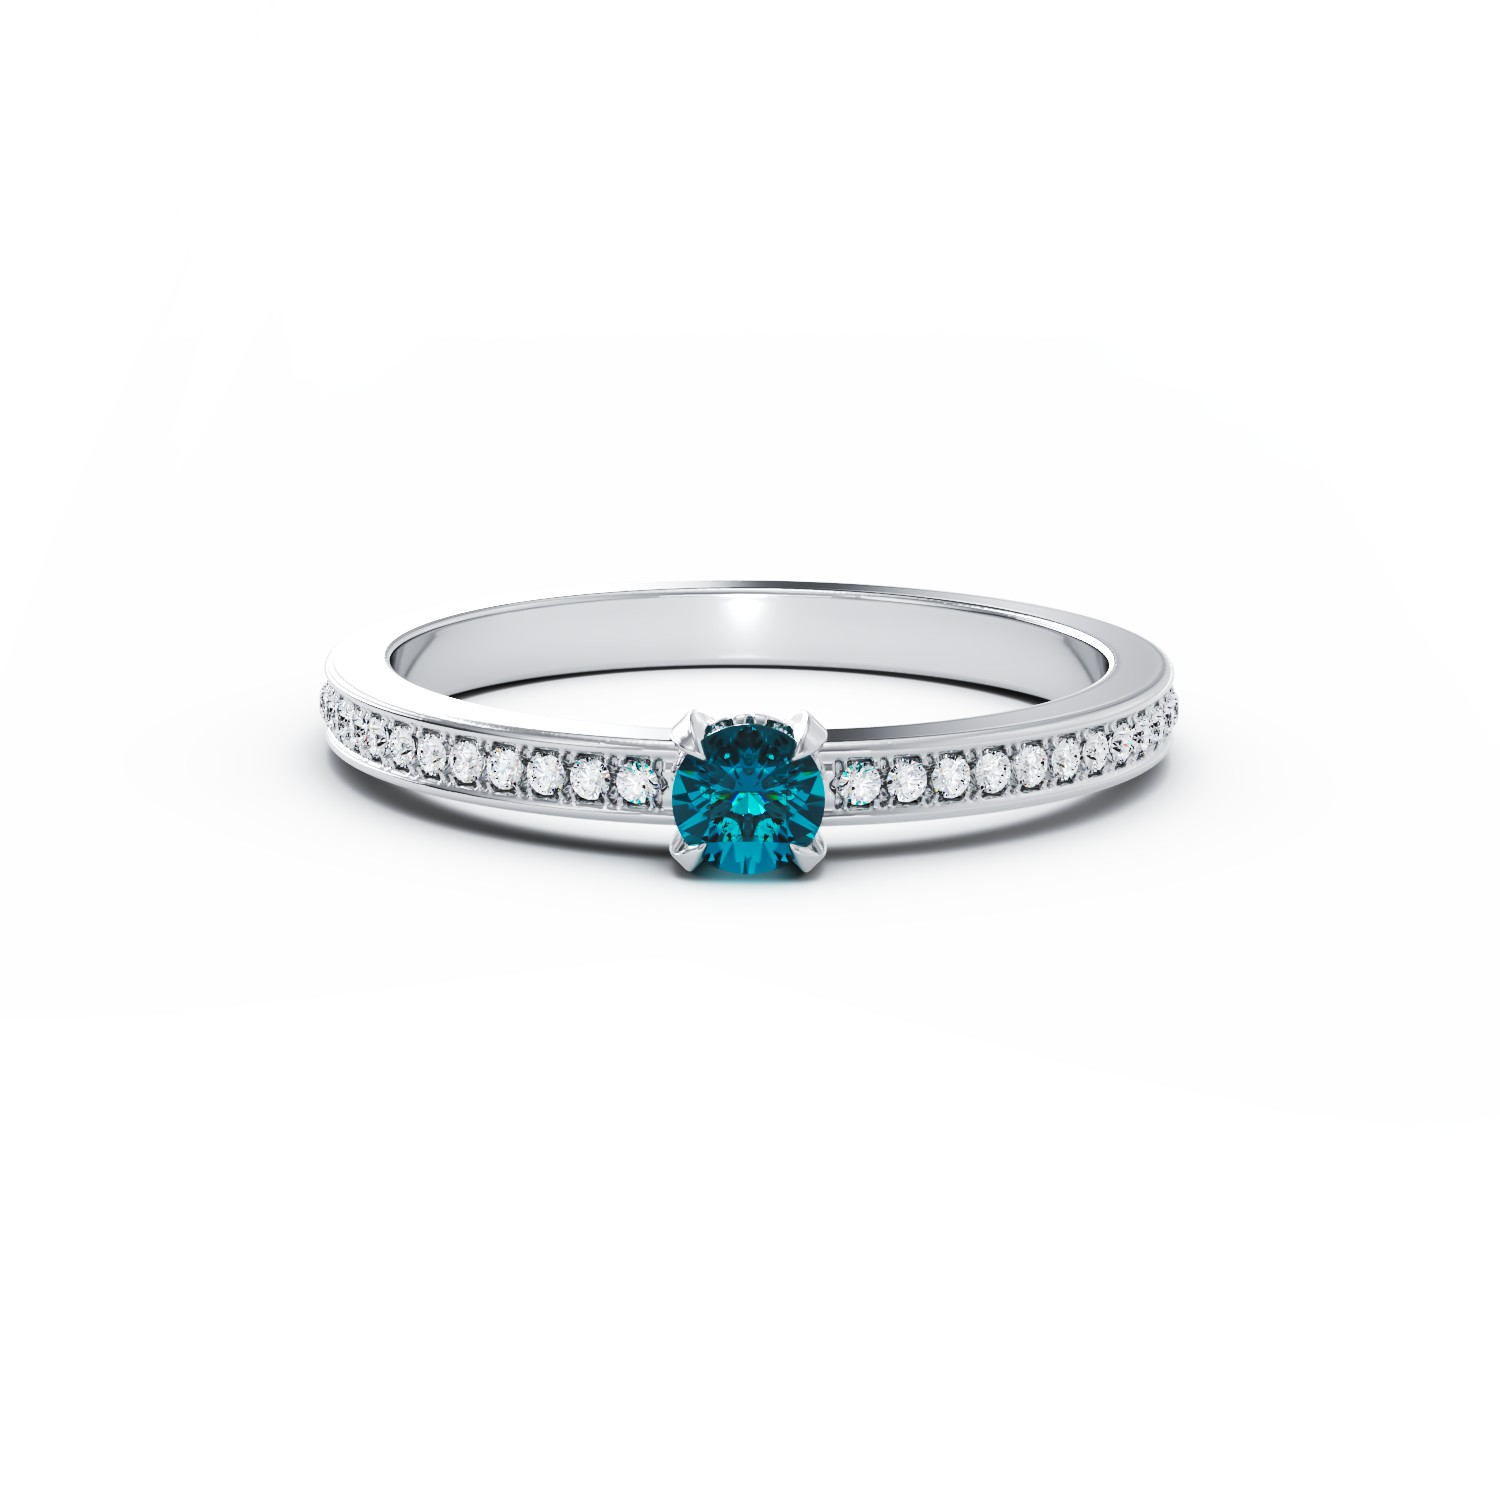 Inel de logodna din aur alb de 18K cu diamant albastru de 0.21ct si diamante transparente de 0.16ct